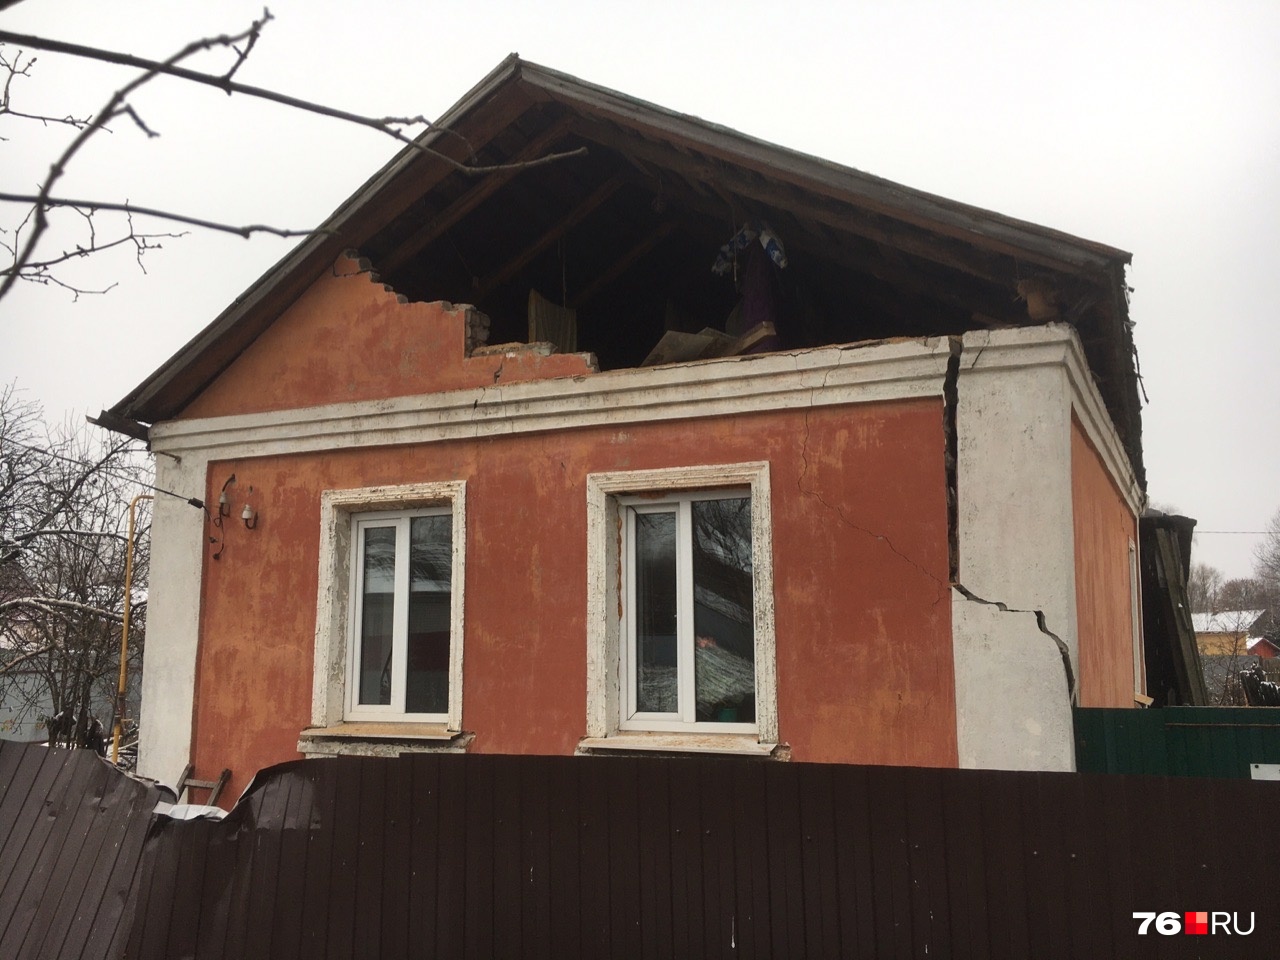 Газовое оборудование во взорвавшемся доме в Ярославле проверяли меньше года назад